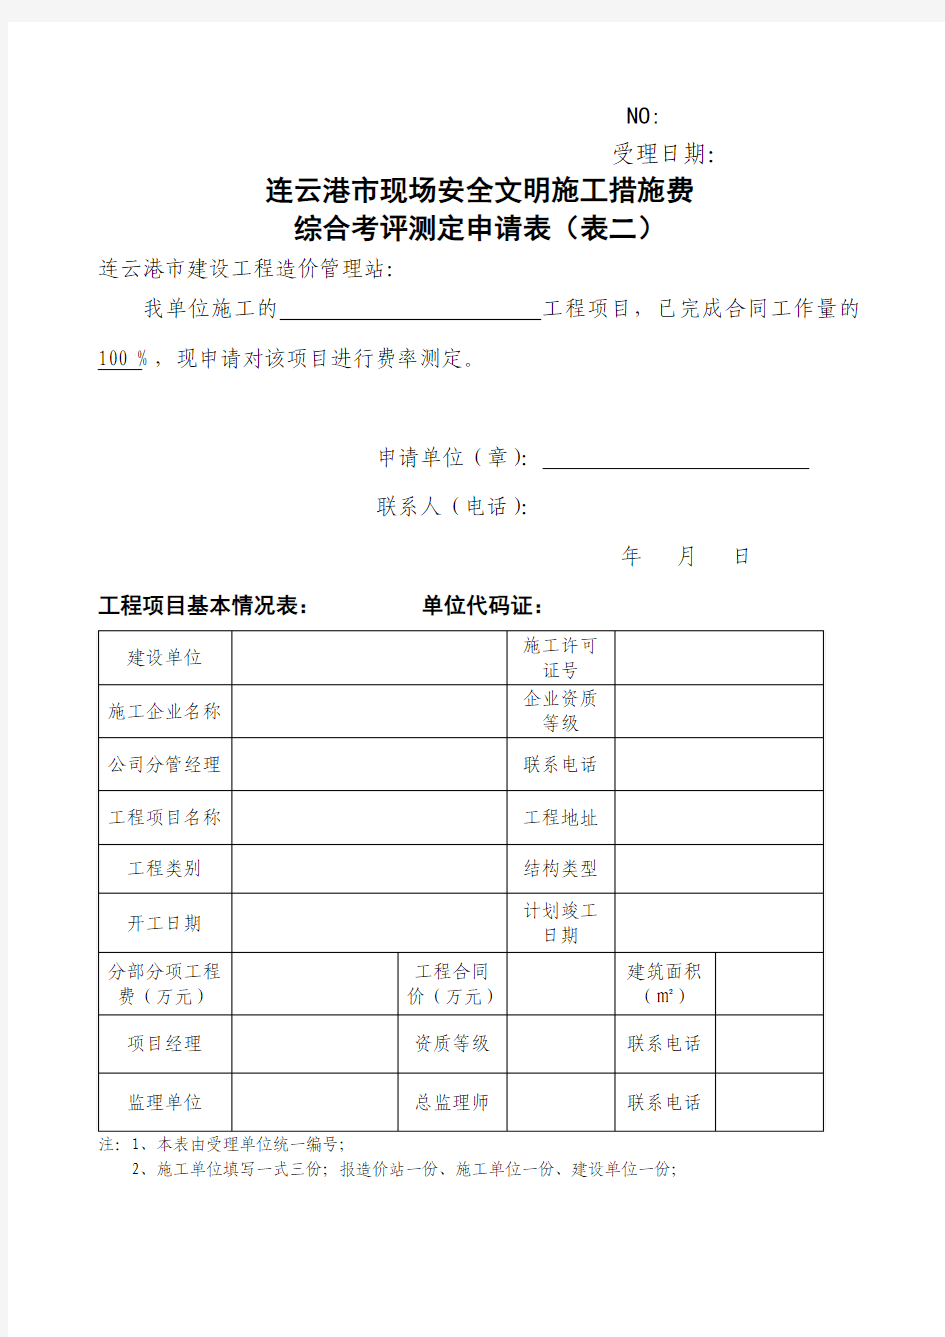 连云港市现场安全文明施工措施费综合考评测定申请表(表二)